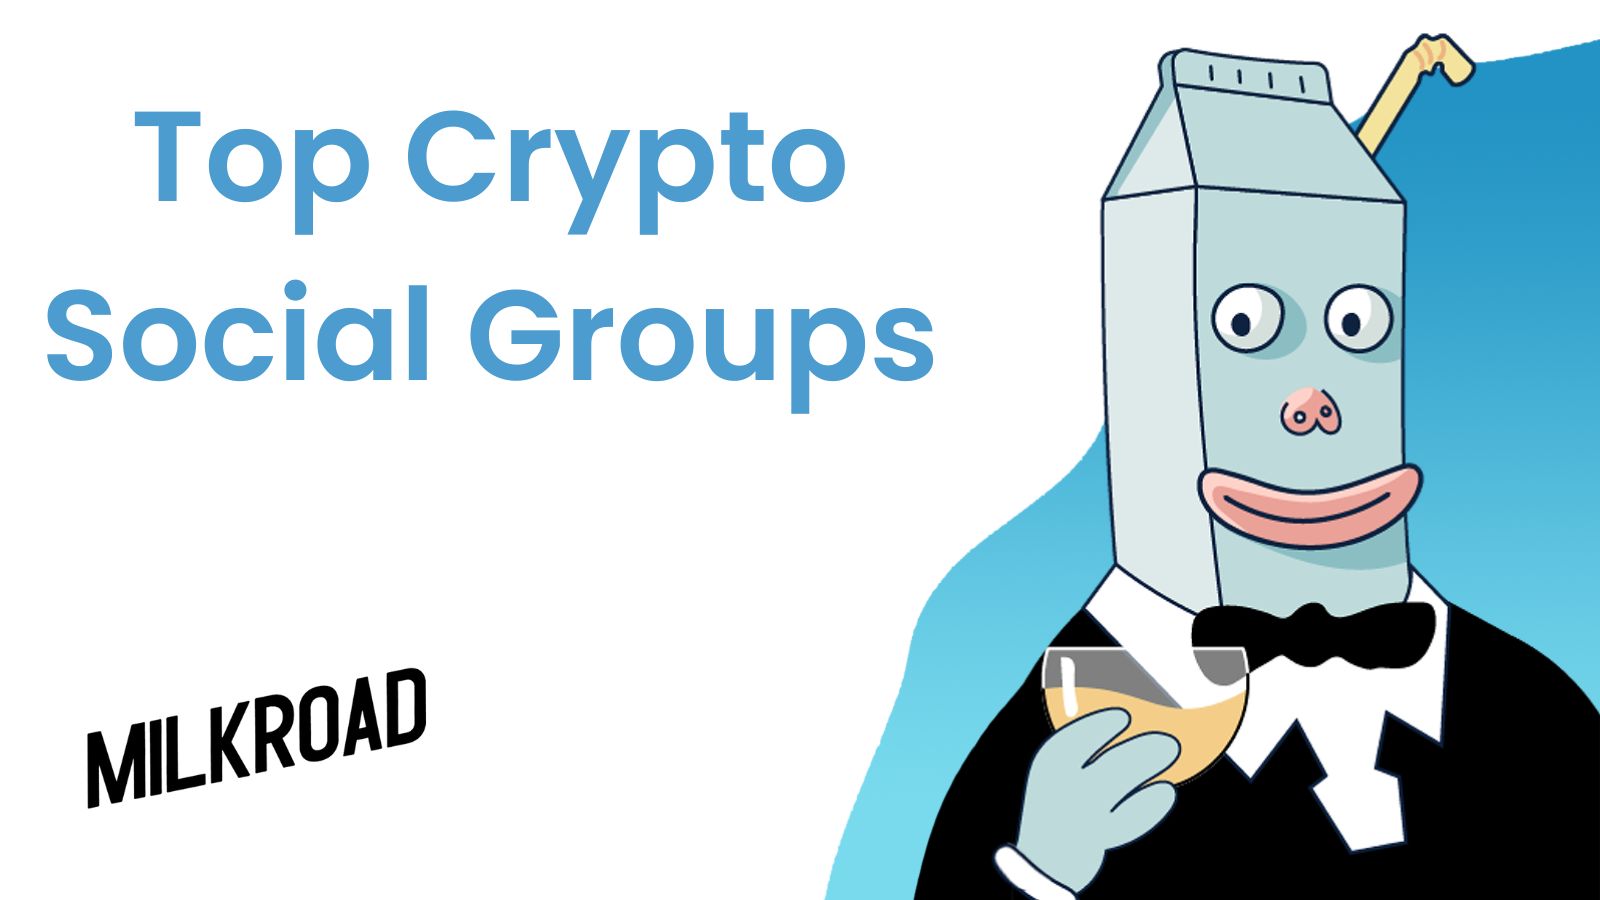 Top Crypto Social Groups